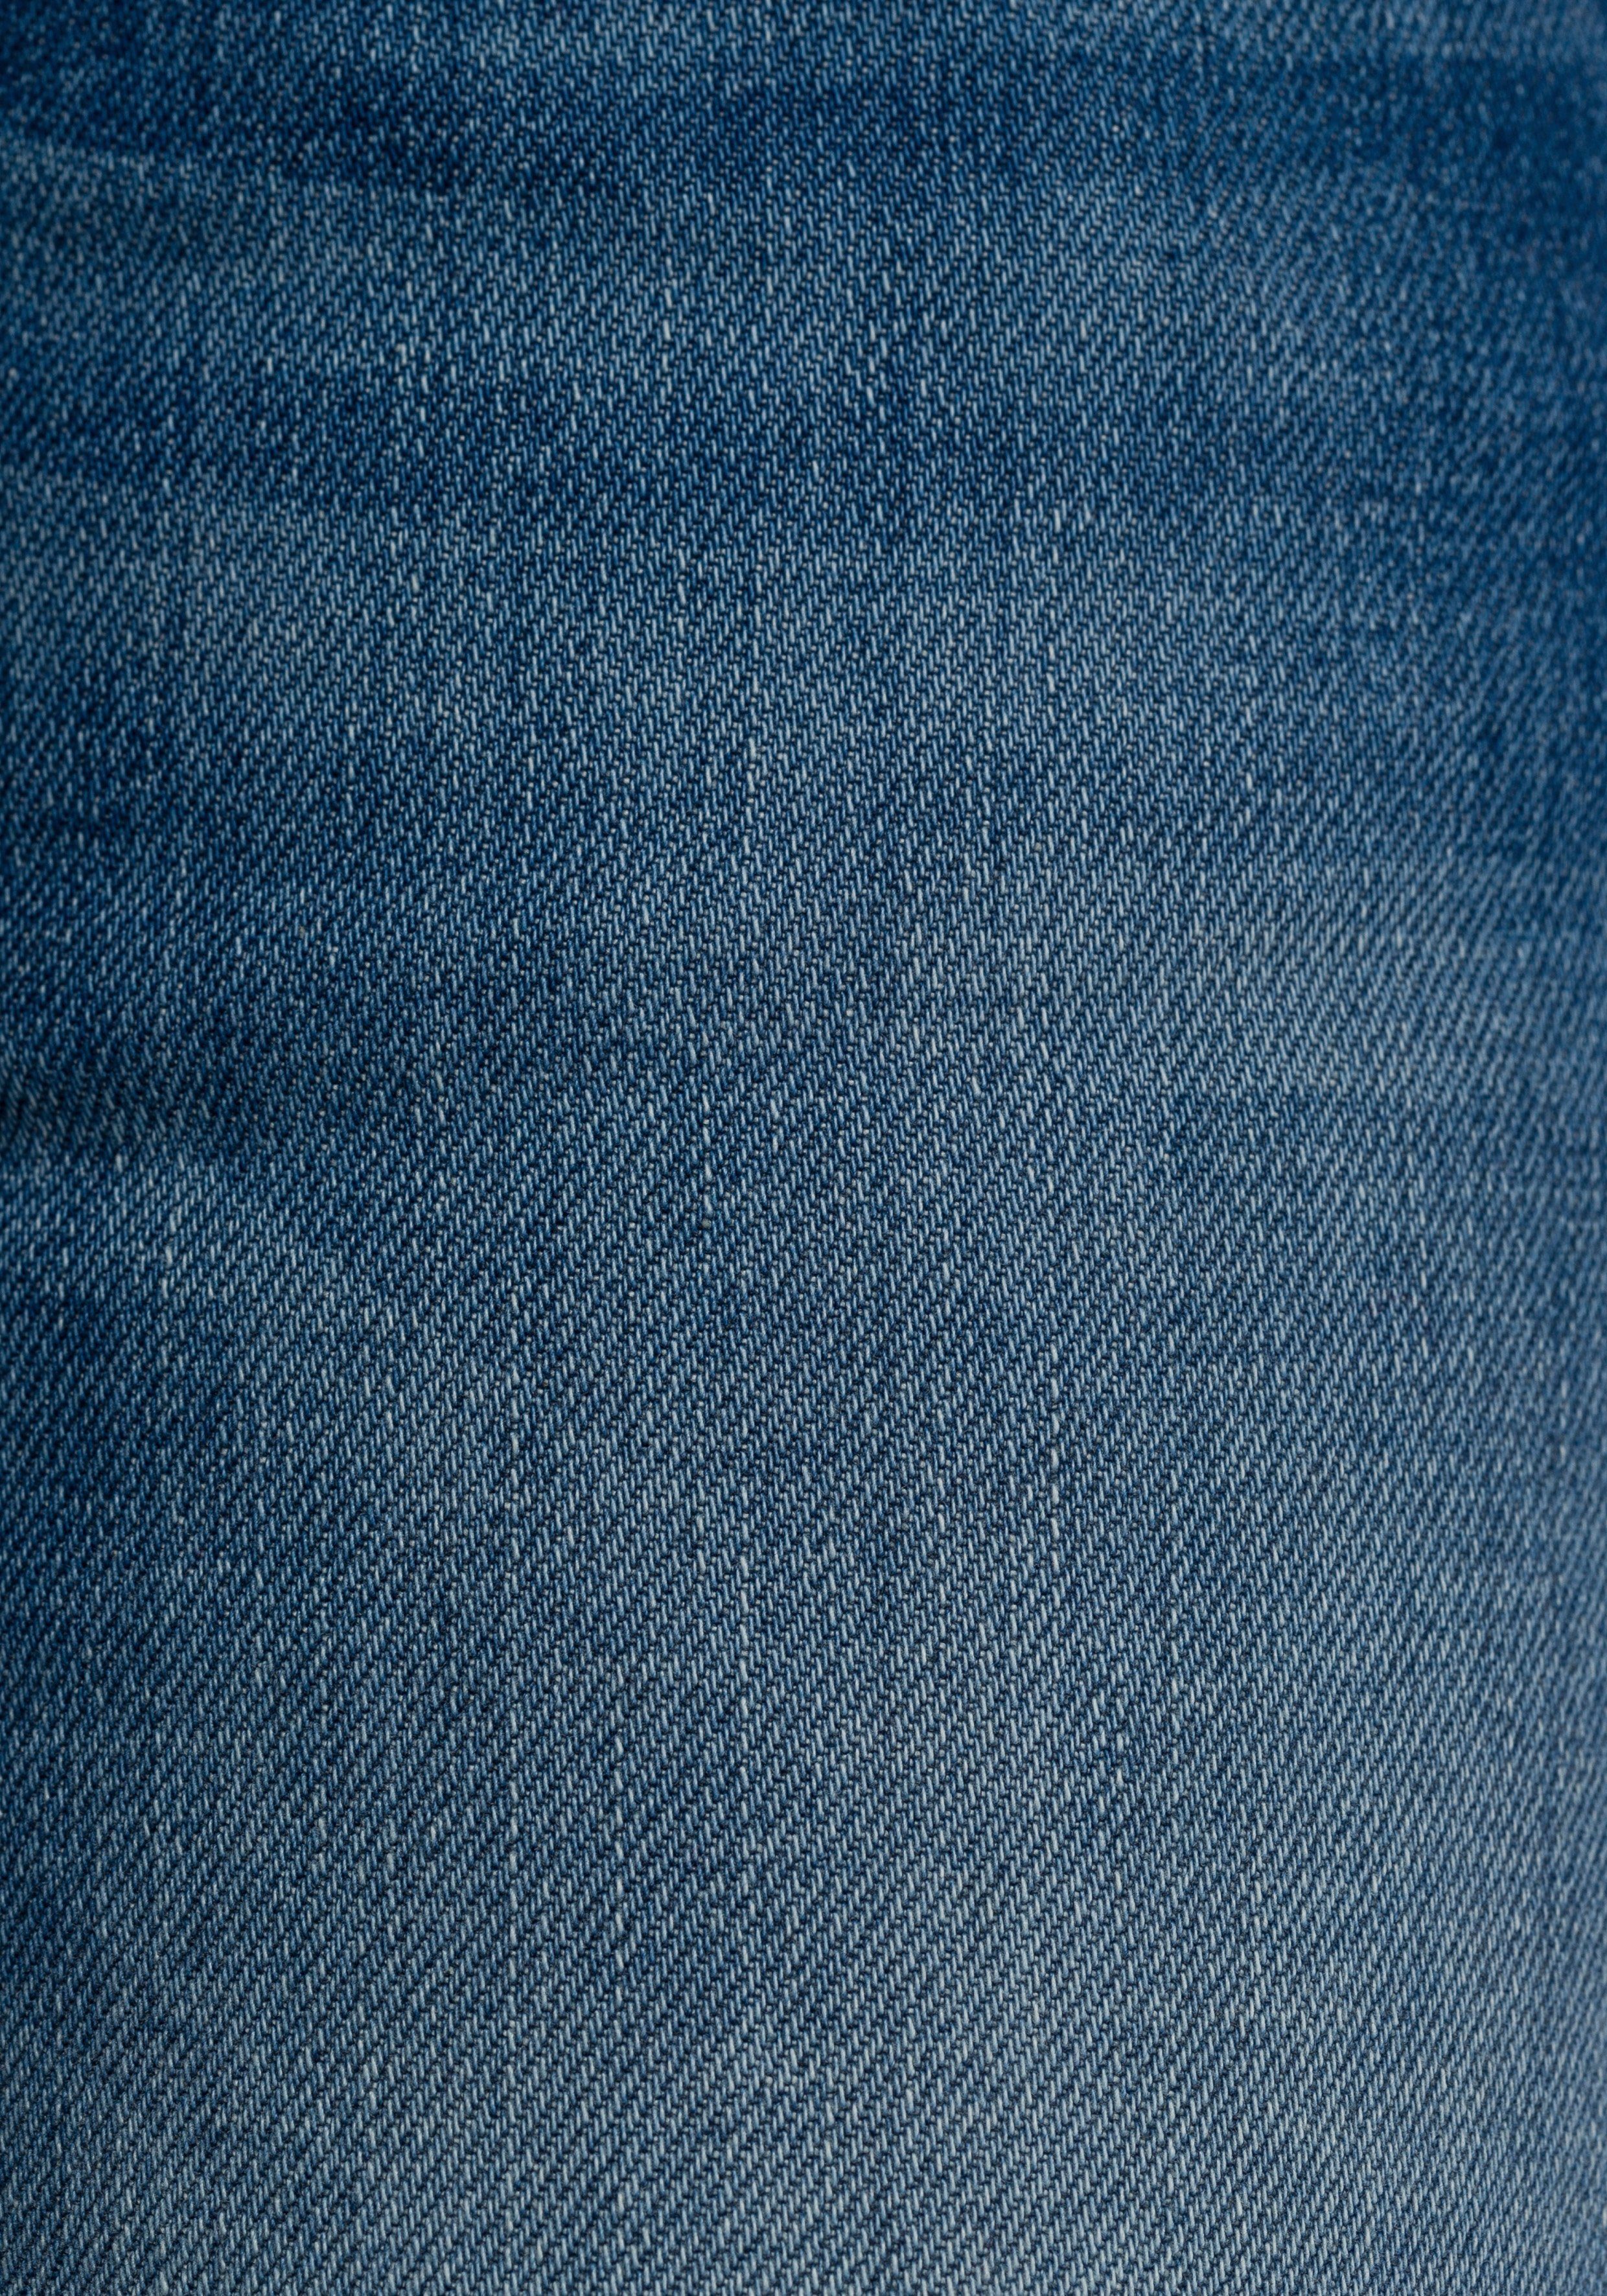 Herrlicher Slim-fit-Jeans PITCH SLIM 879 ORGANIC mit sea Abriebeffekten Vintage-Style blue